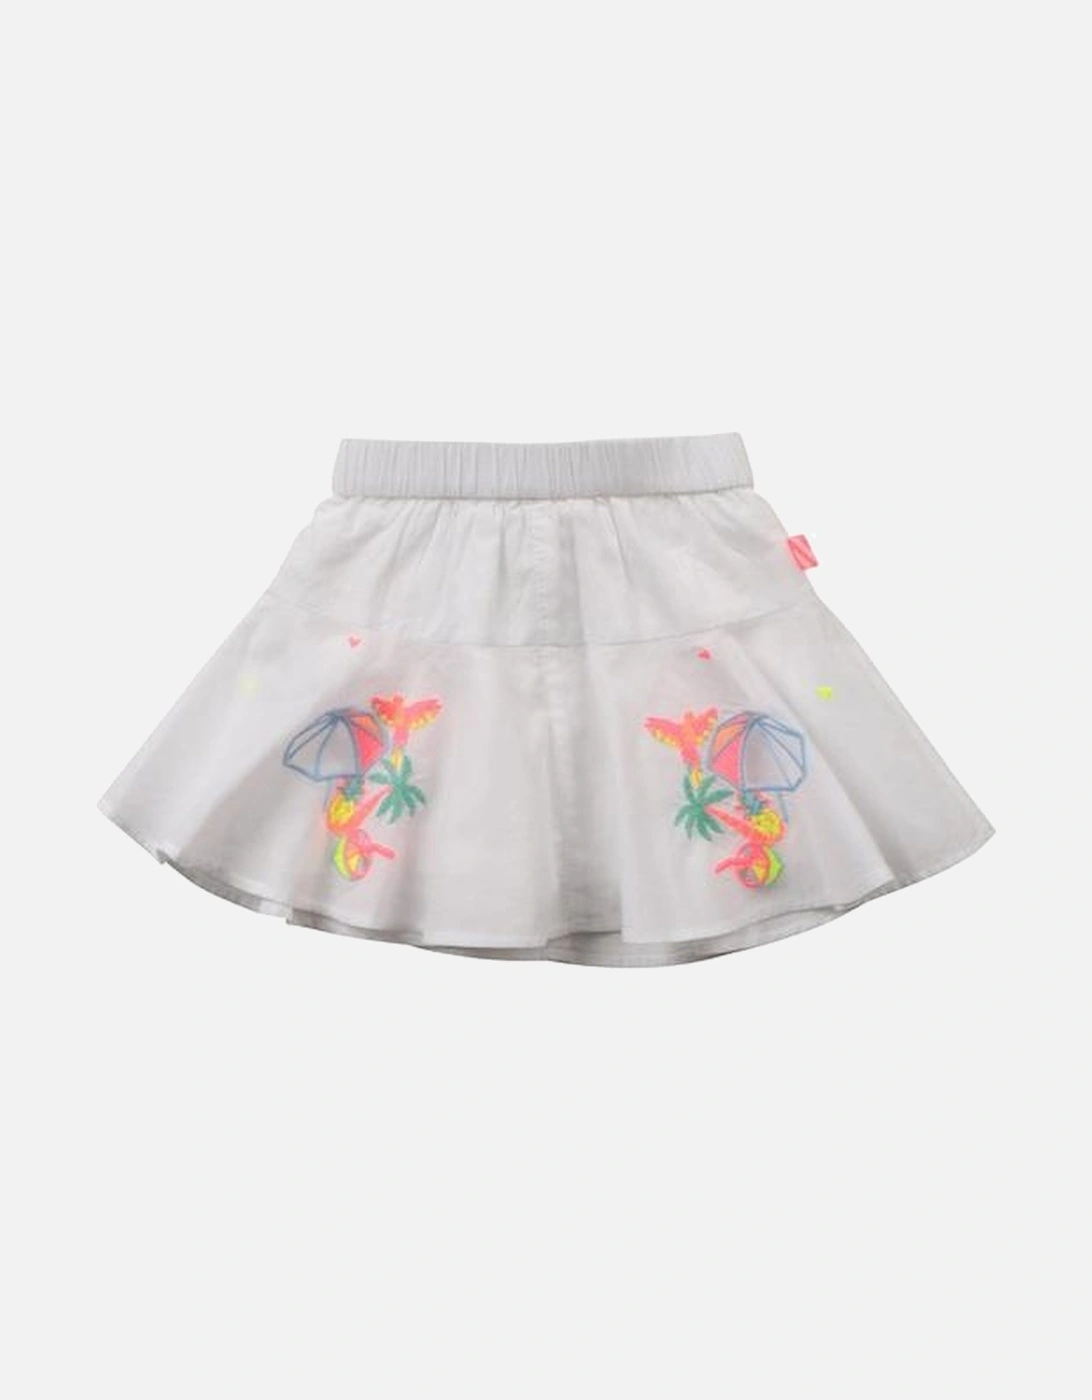 Girls White Shorts Skirt, 4 of 3